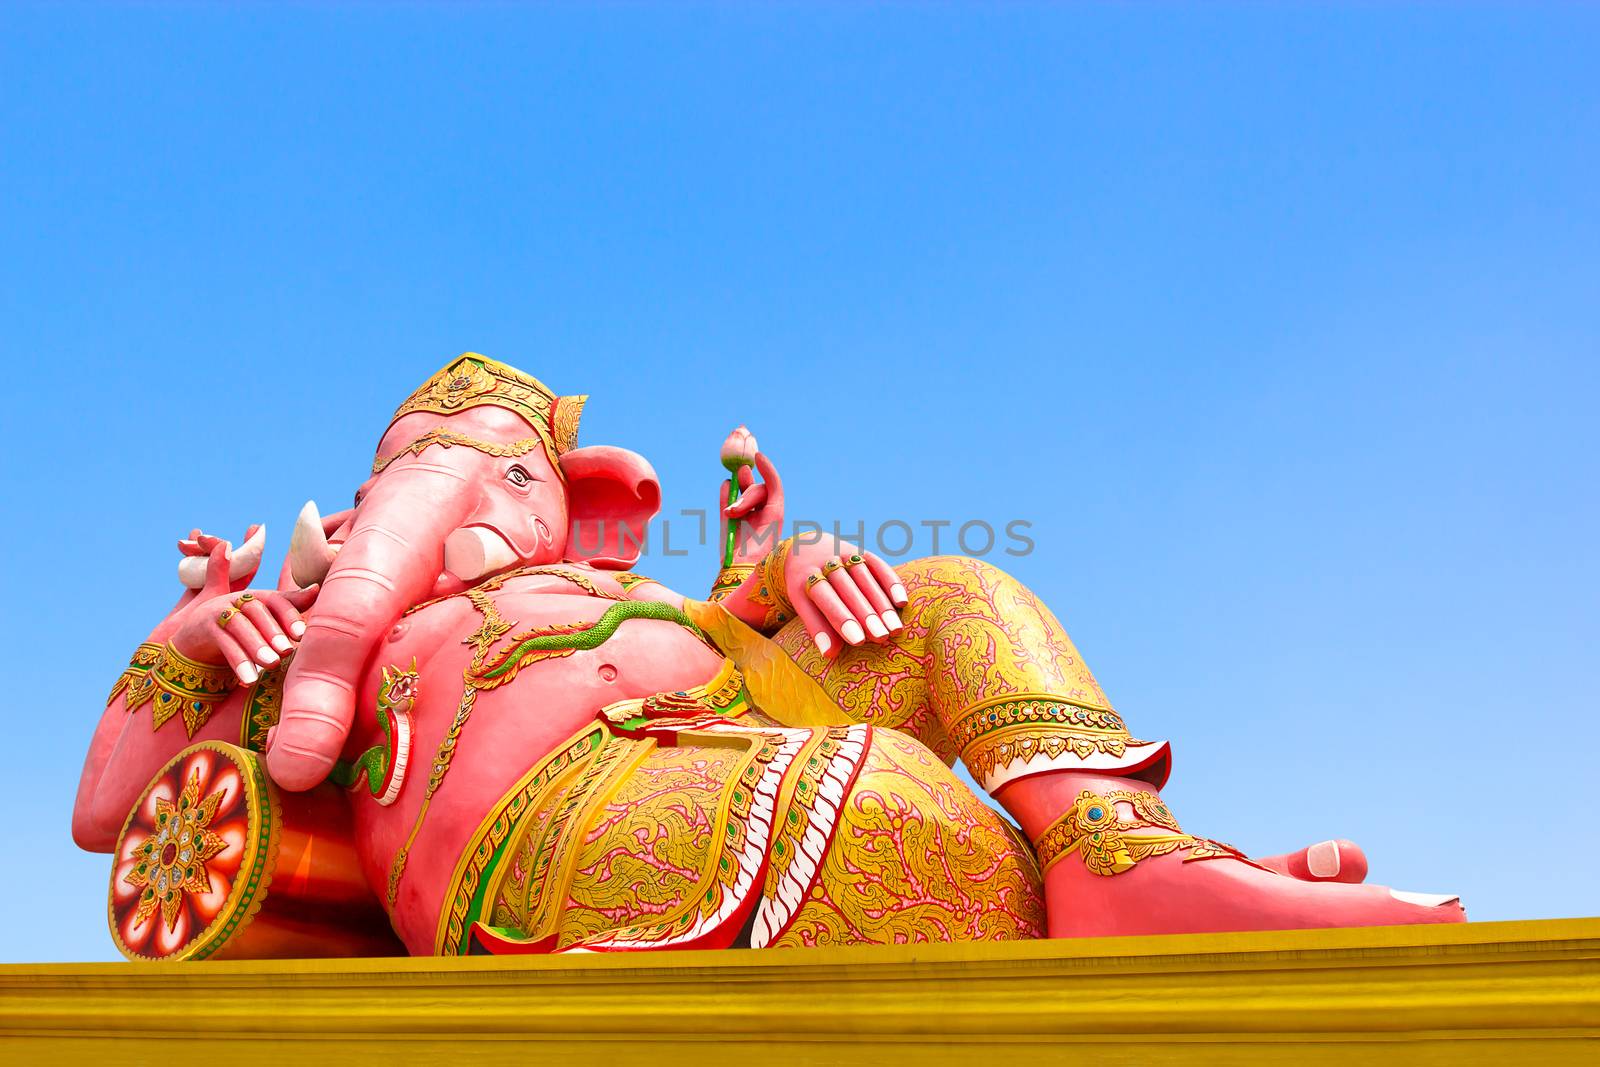 Ganesha by narinbg